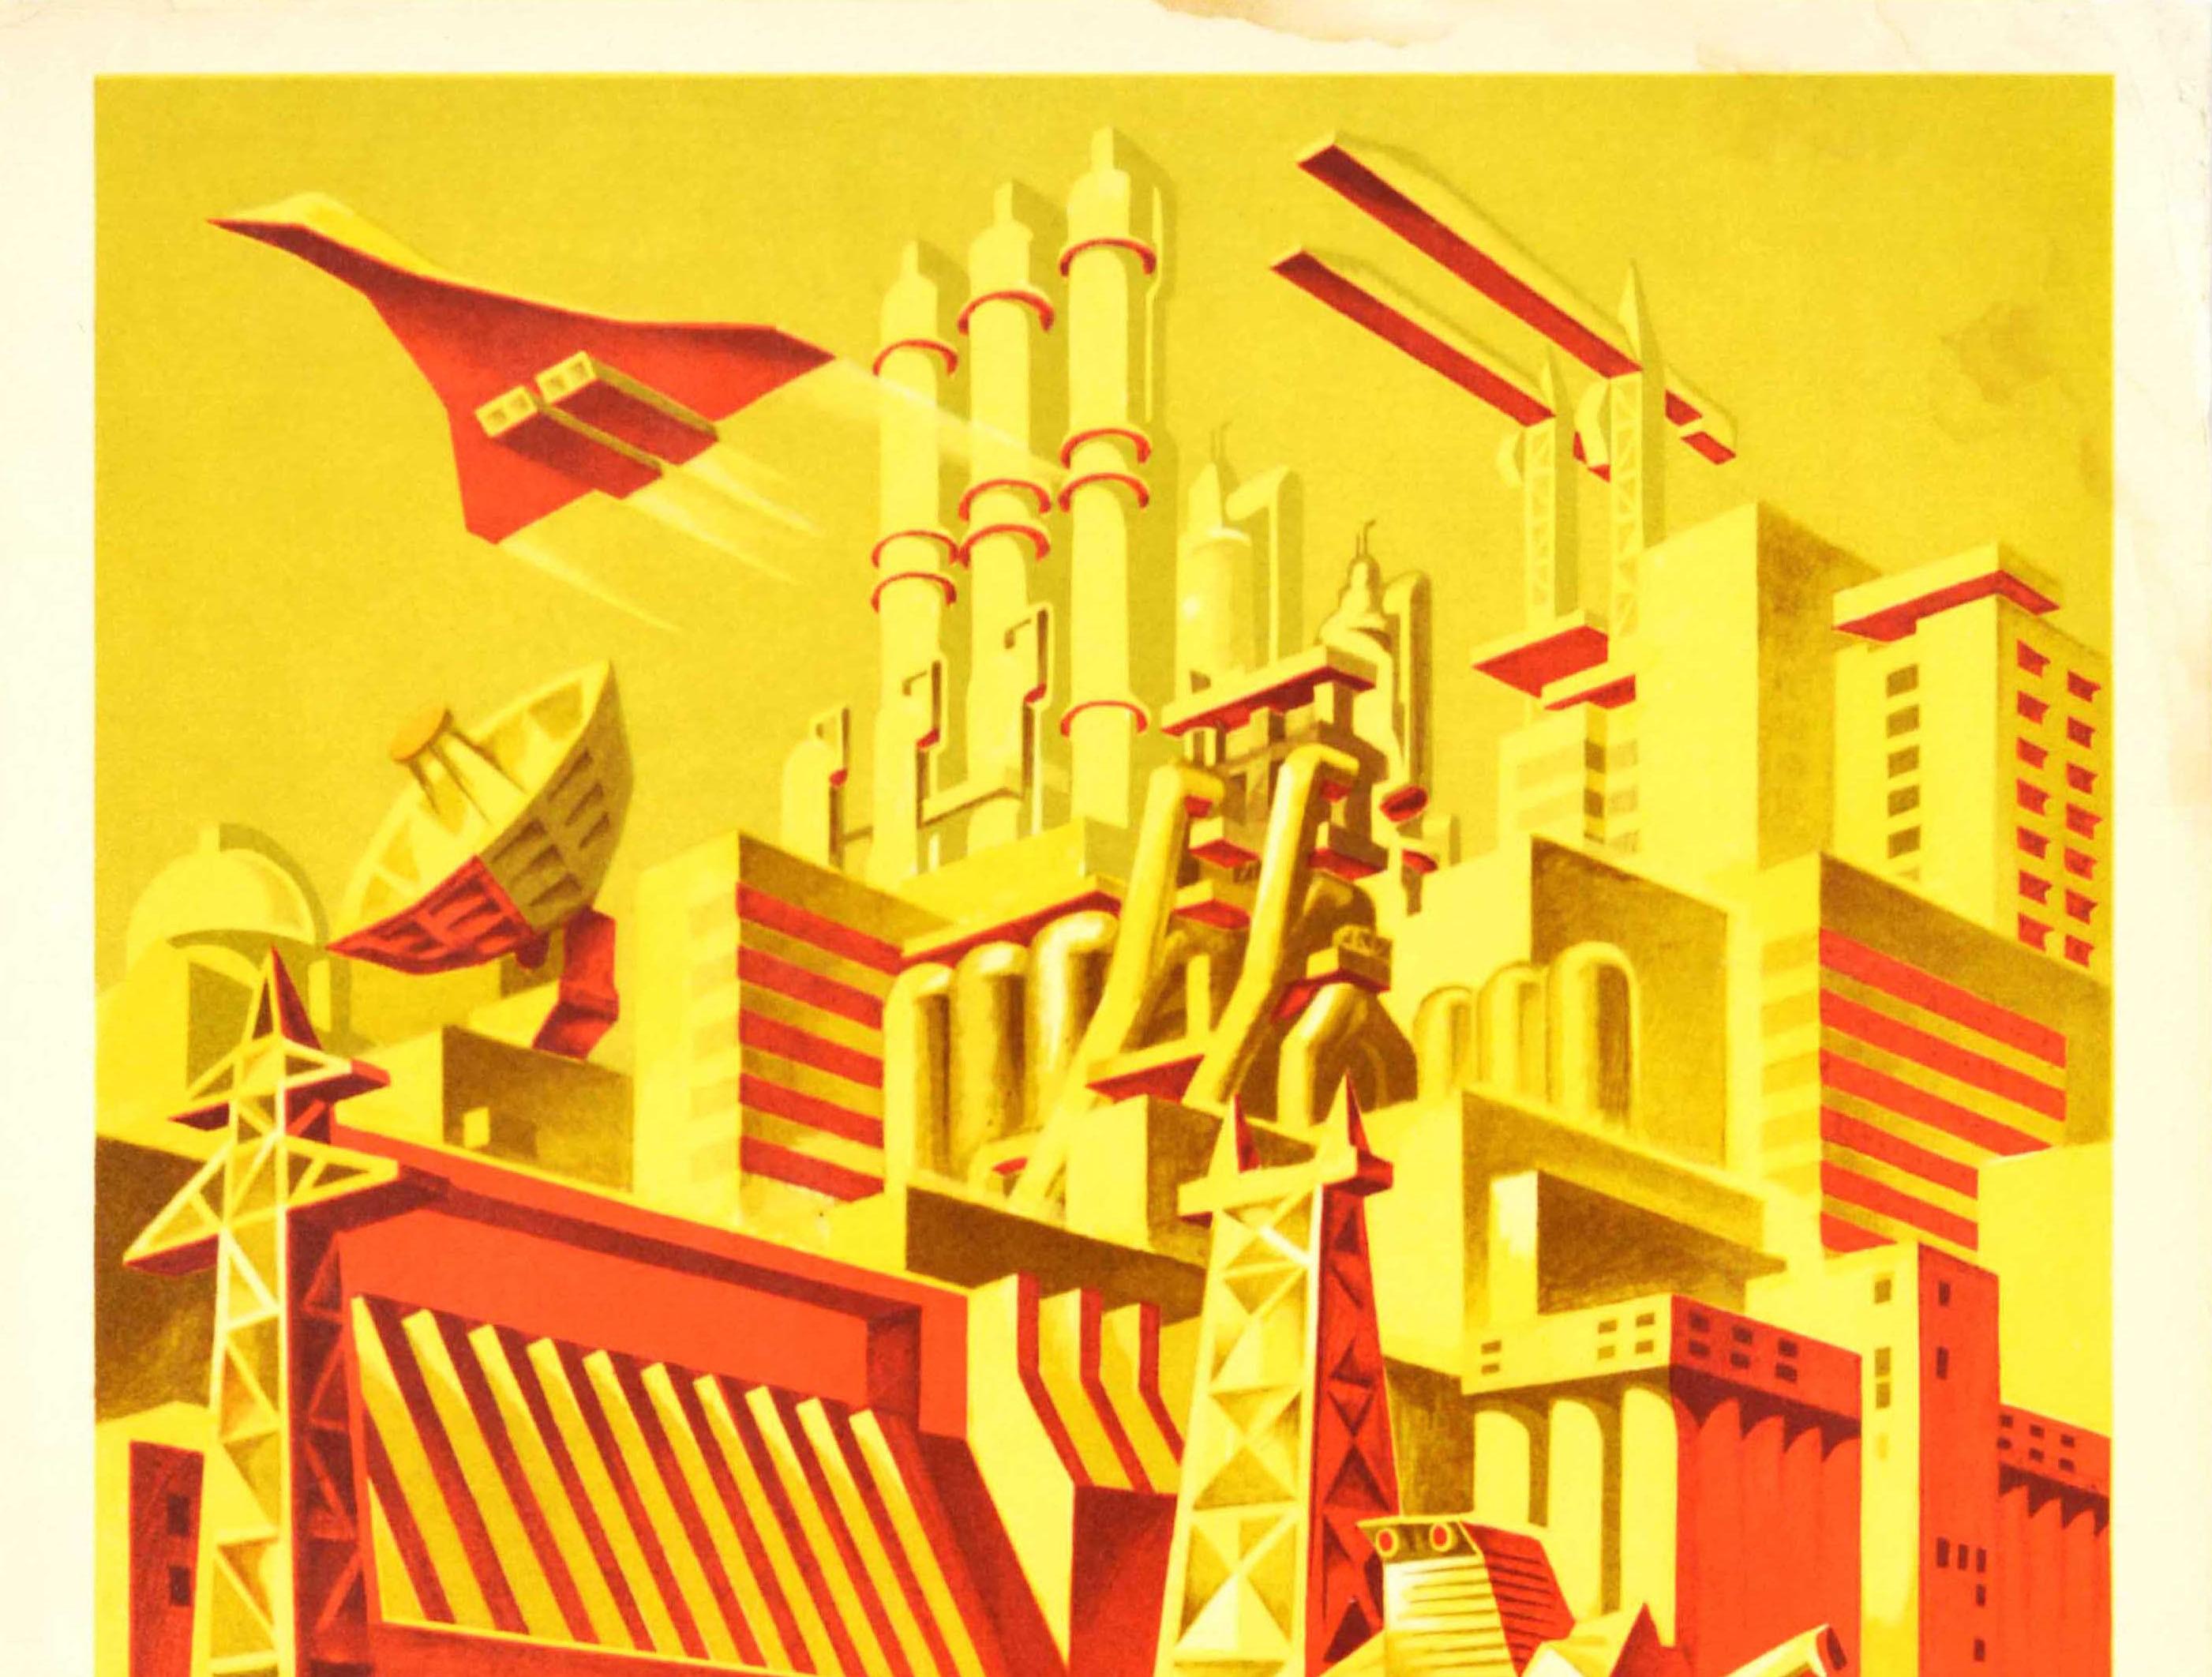 Original sowjetisches Propagandaplakat - Auf neue Erfolge beim Aufbau des Kommunismus! / ? ????? ??????? ? ????????????? ??????????! - mit einem Überschallflugzeug im Concorde-Stil, das über Industrieanlagen und Satellitenkommunikation mit Kränen,